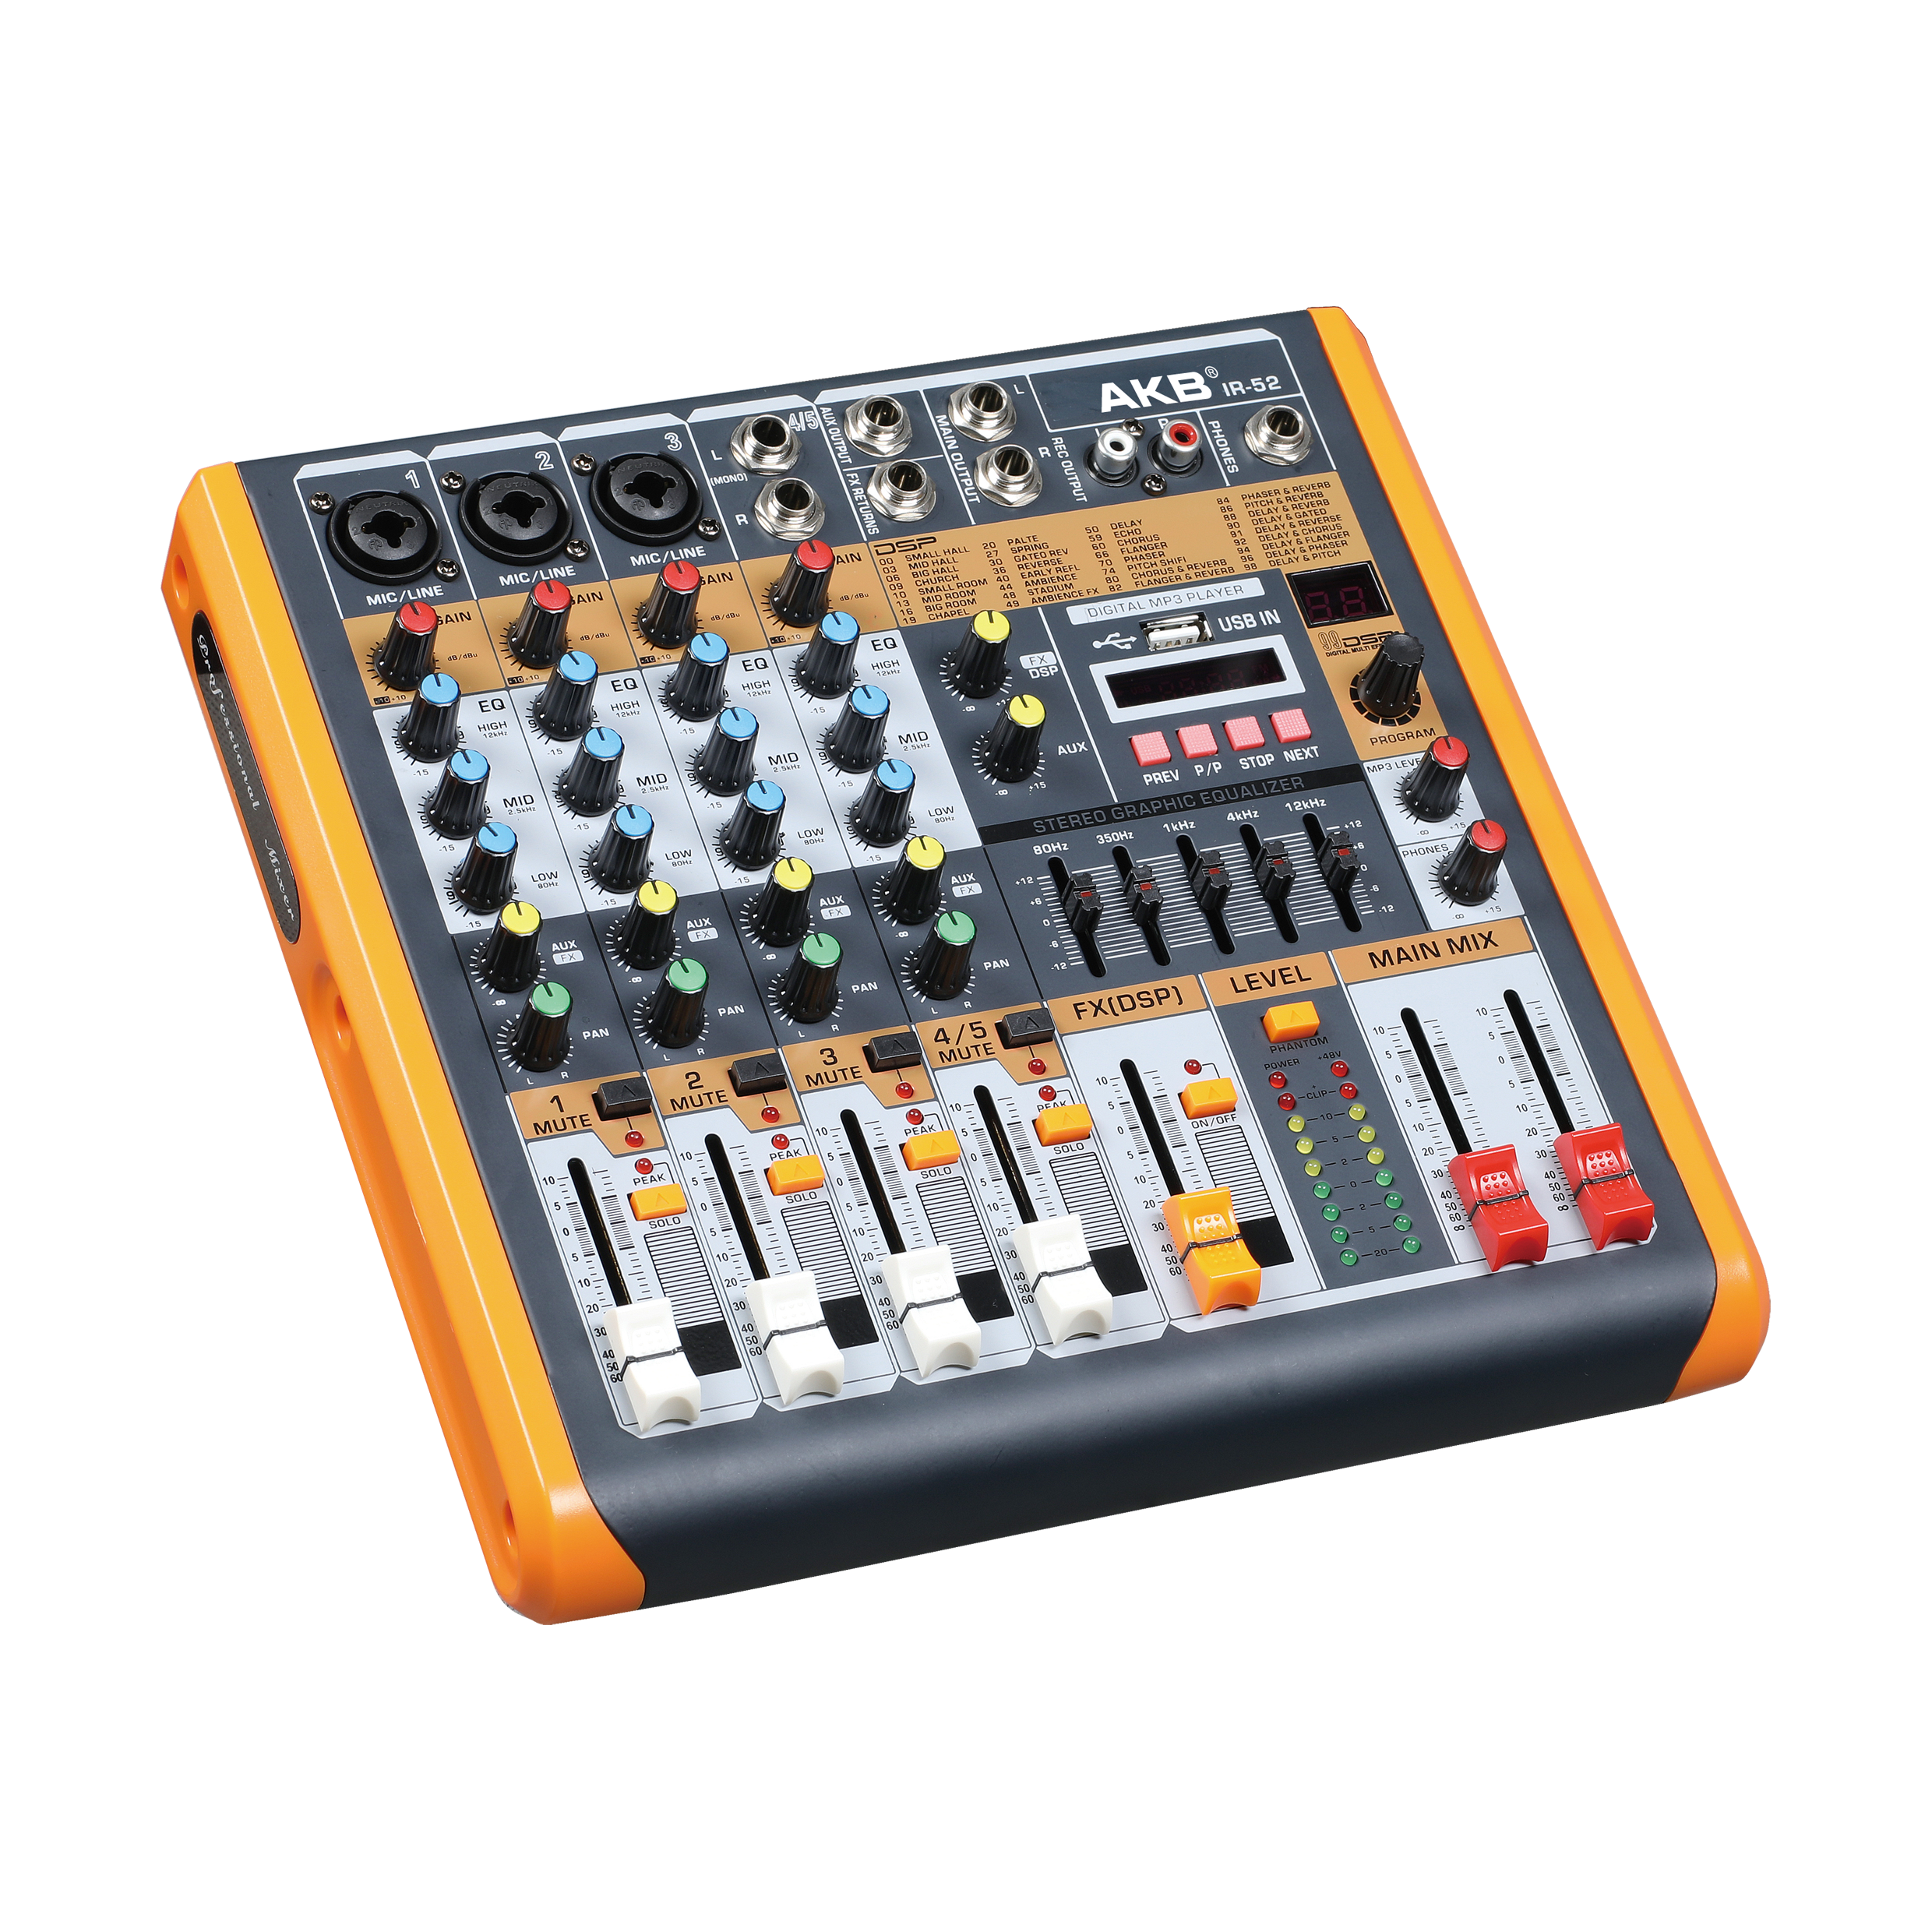 IR-52 professional audio mixer 99 DSP